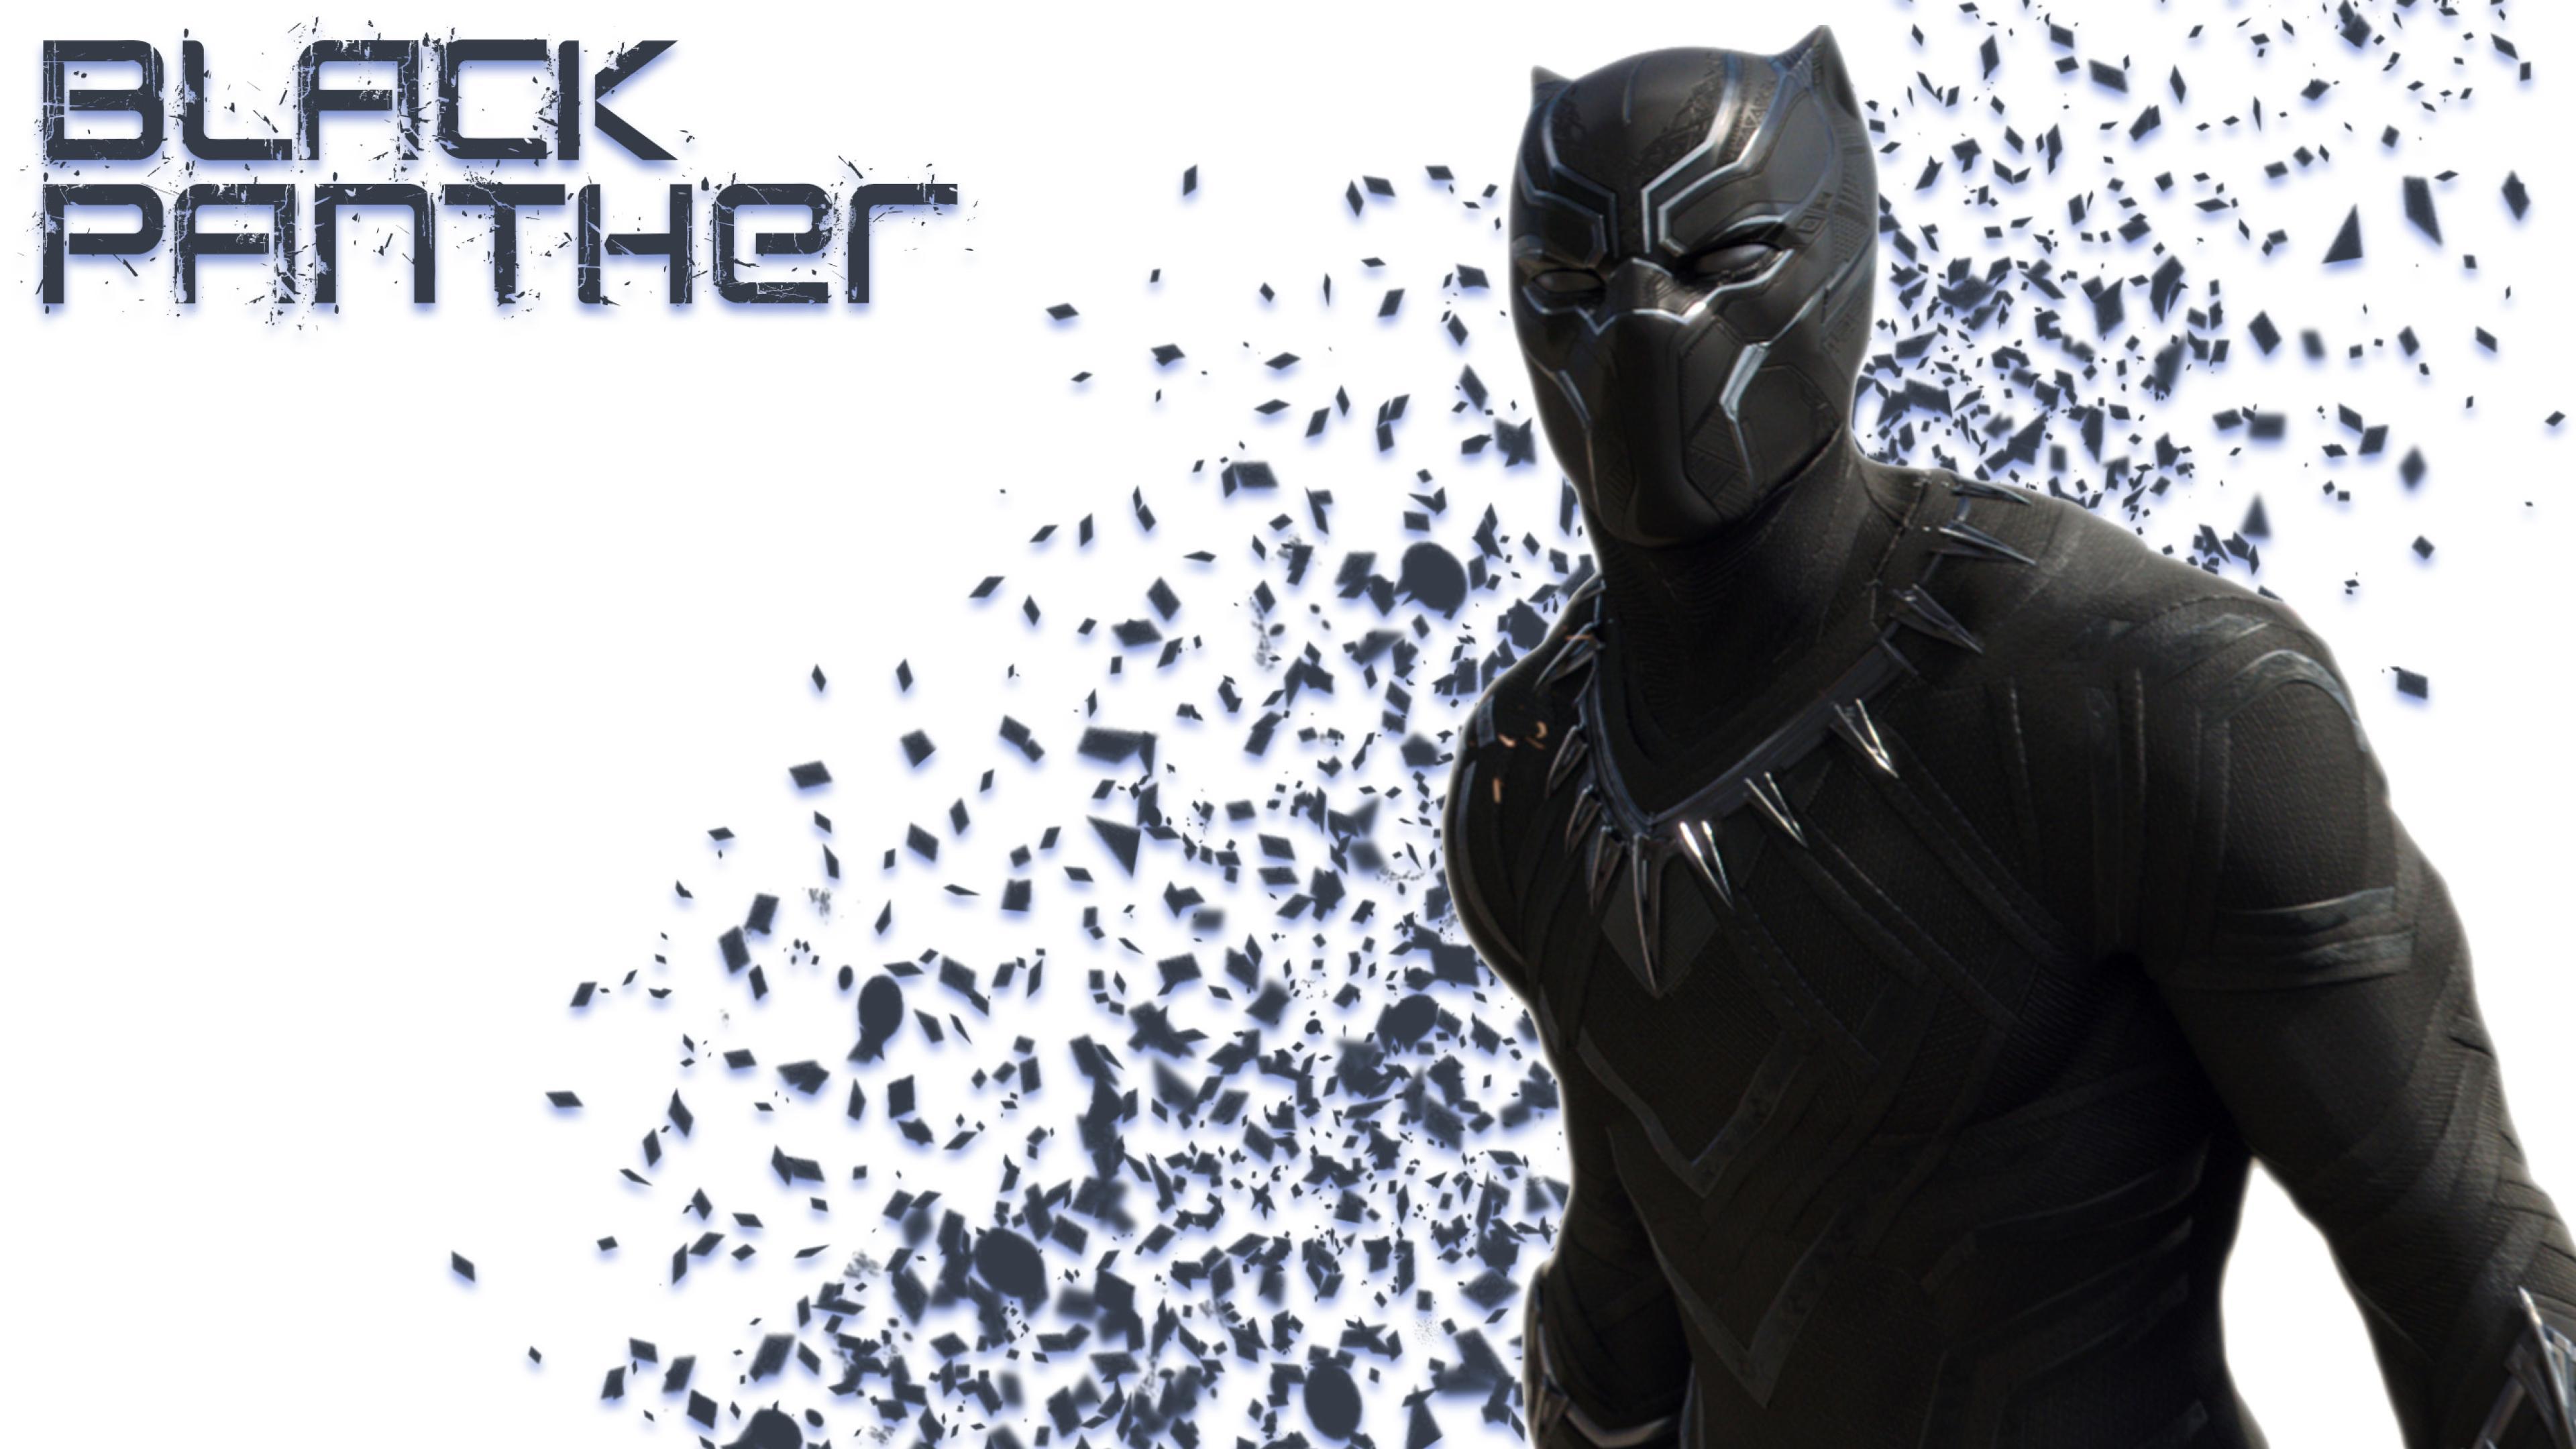 Ultra Hd Black Panther Wallpaper 4K : Wallpaper 4k black panther rise